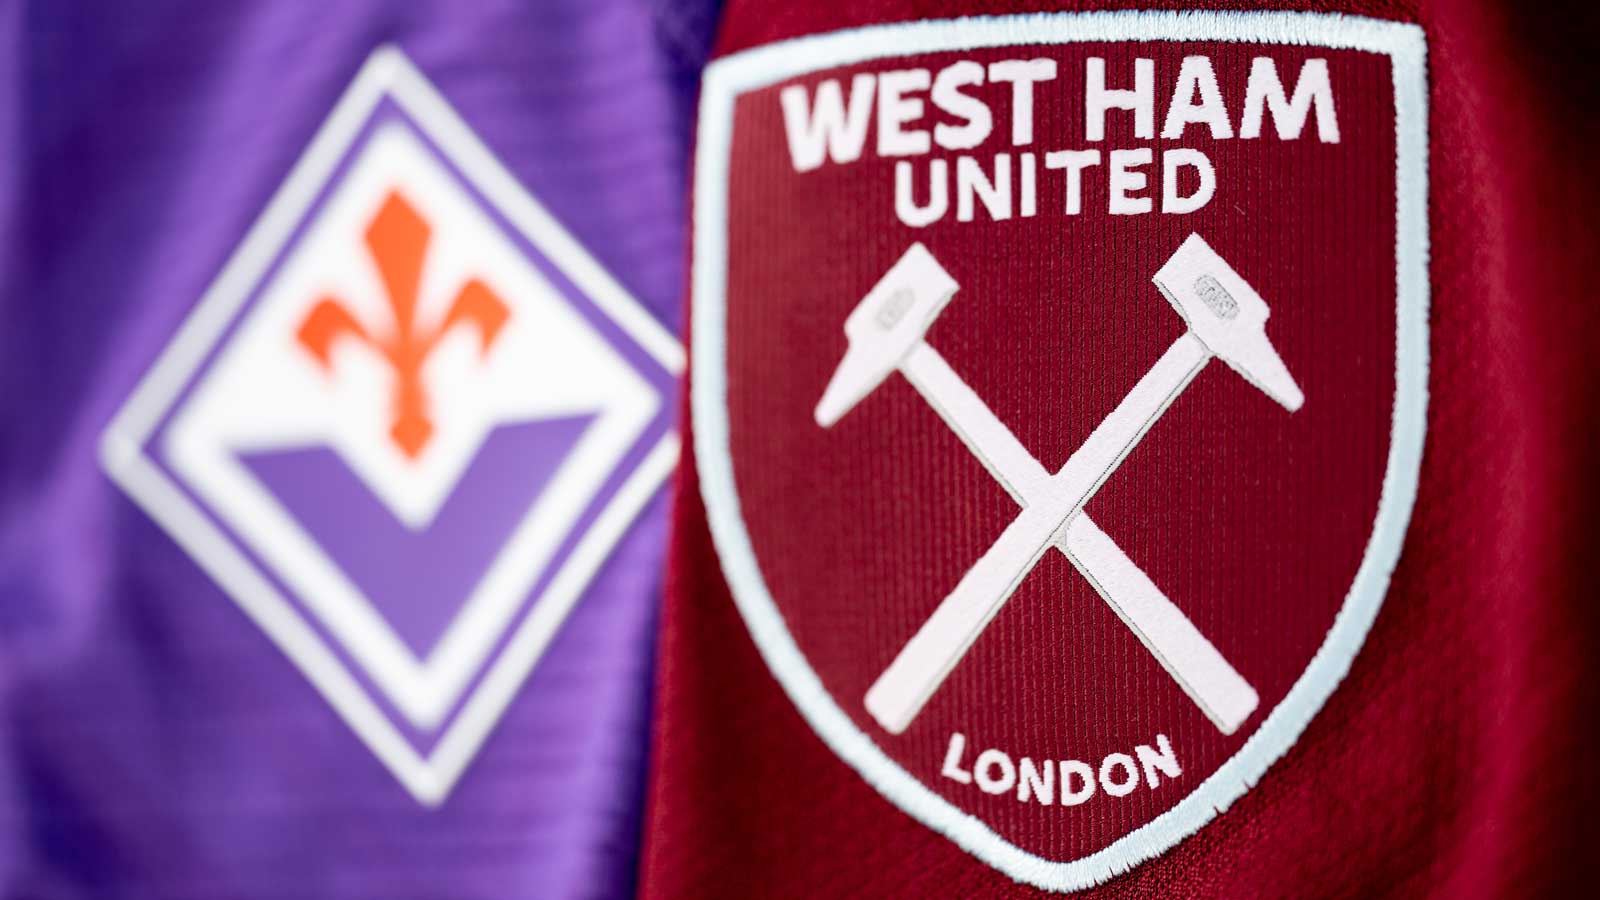 Fiorentina and West Ham United badges